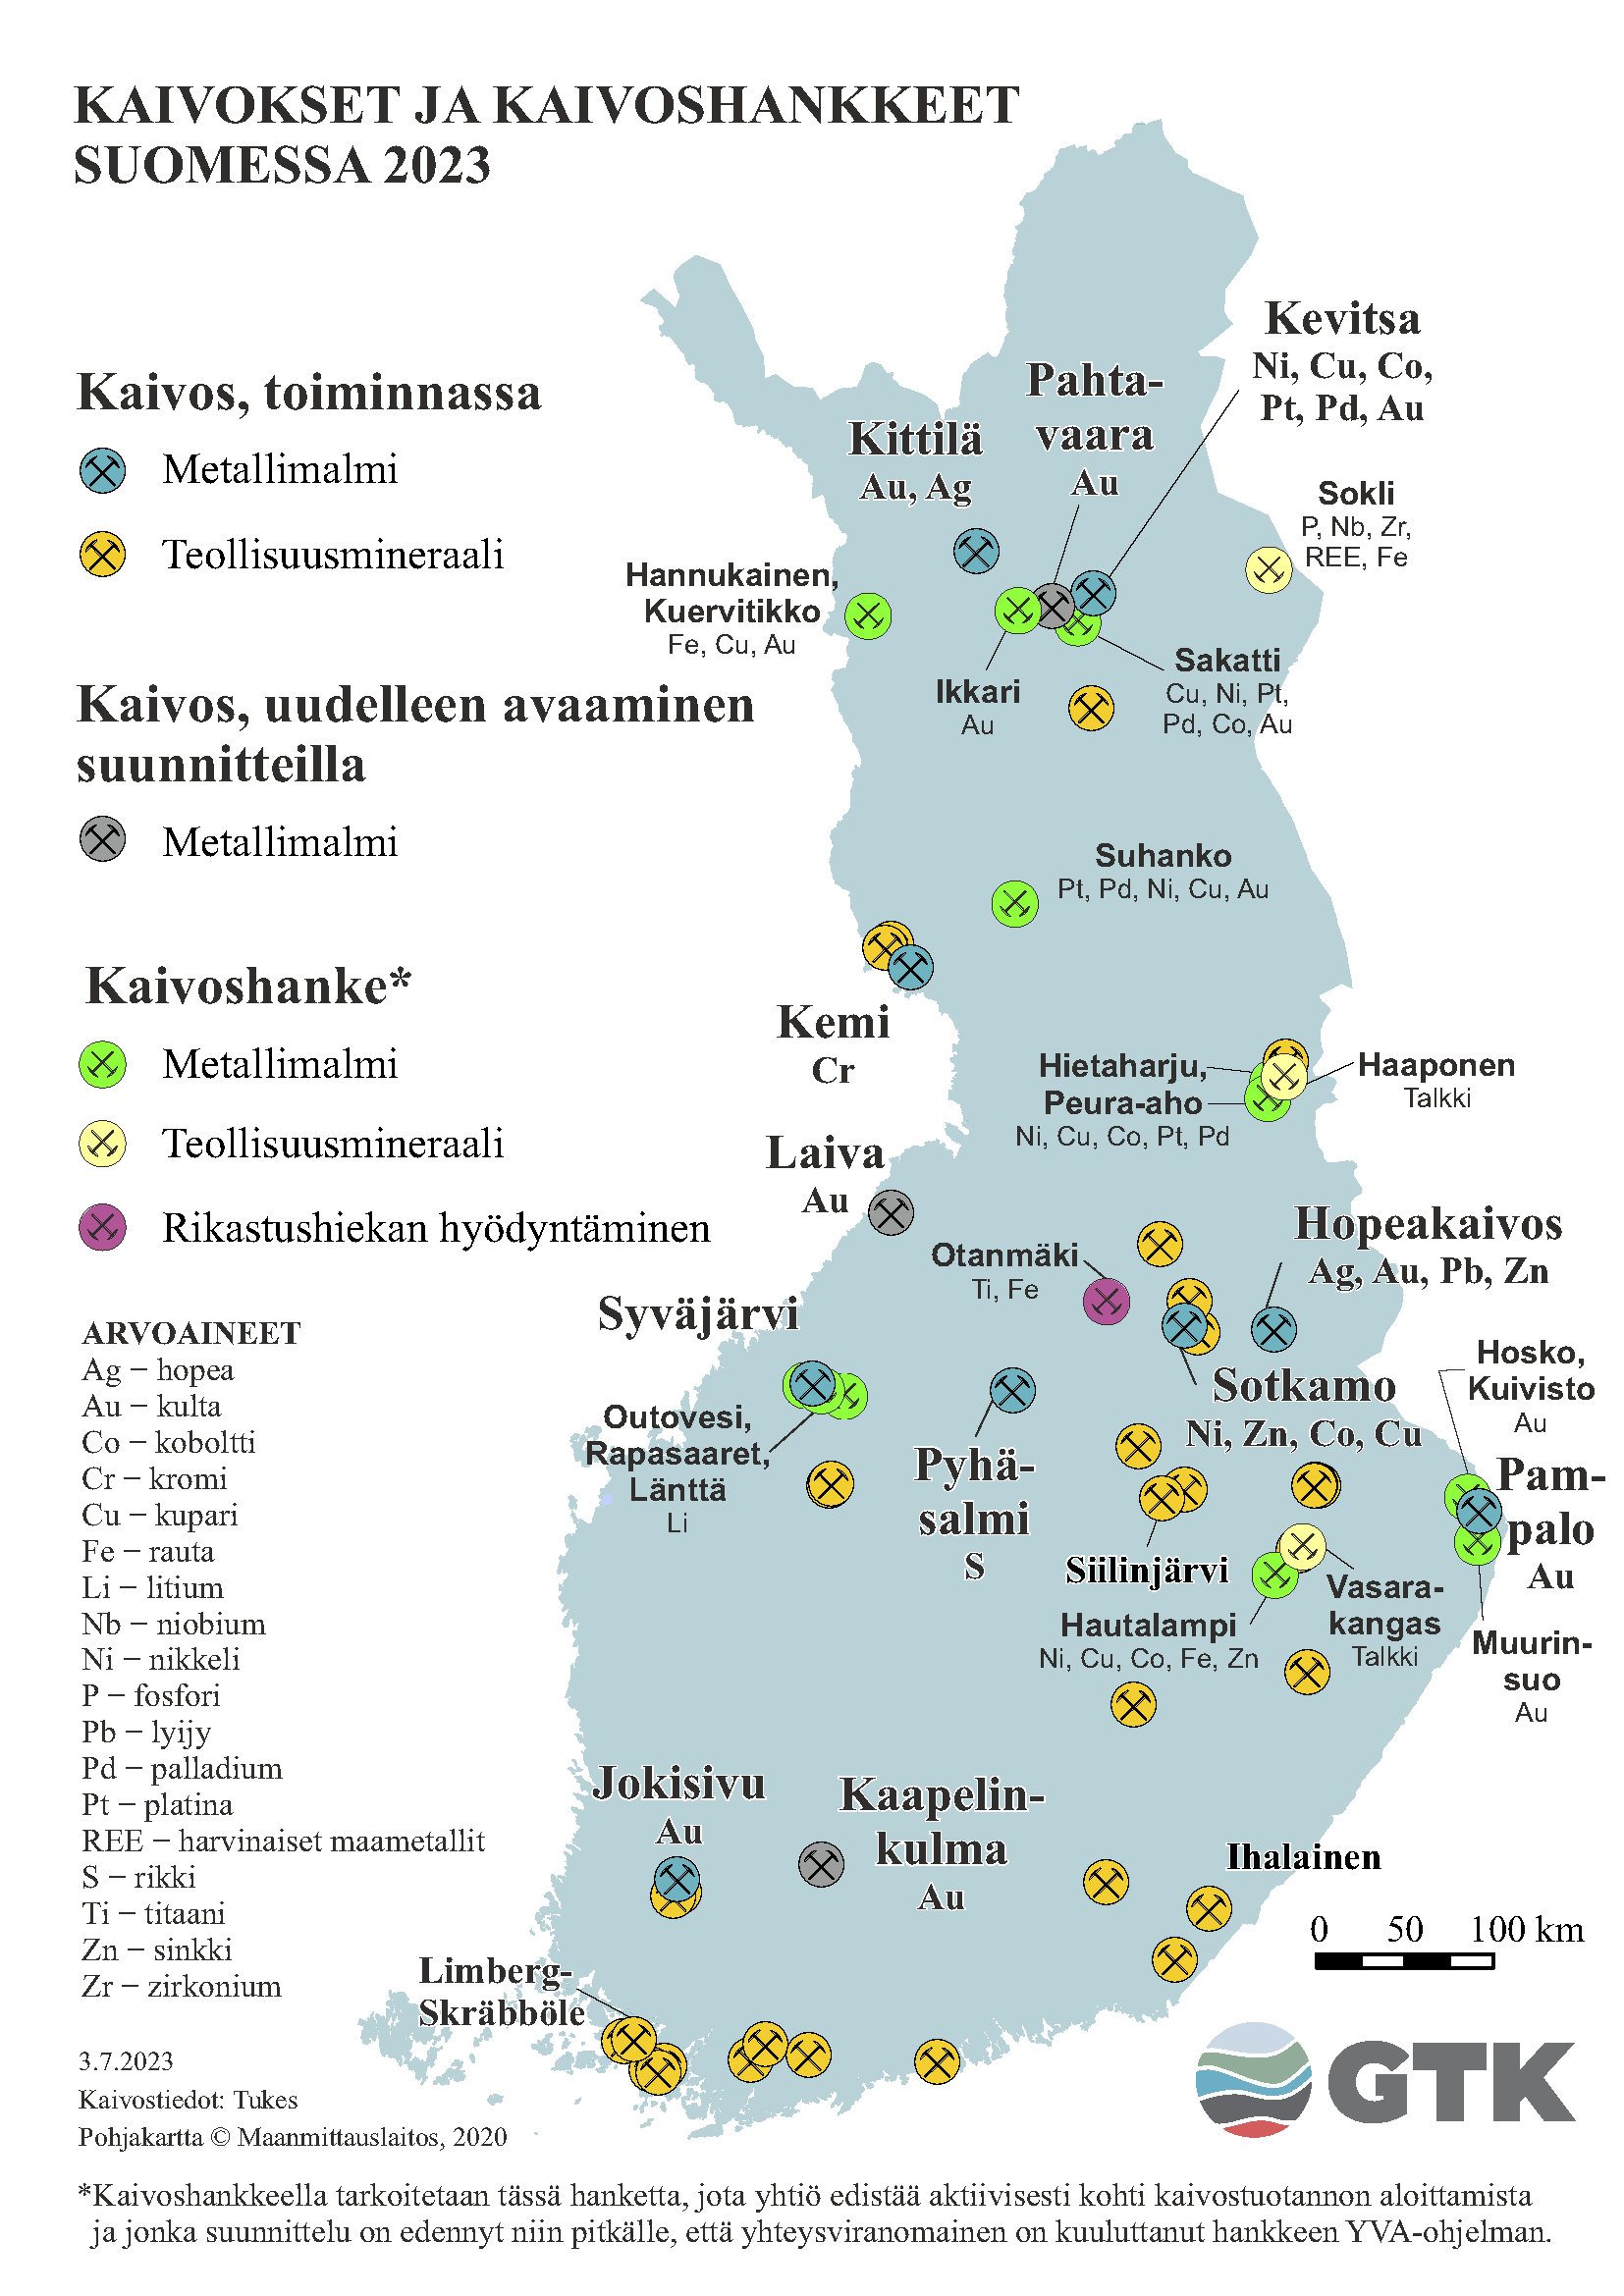 Suomen kartta, johon on merkattu kaivokset ja kaivoshankkeet Suomessa vuonna 2023